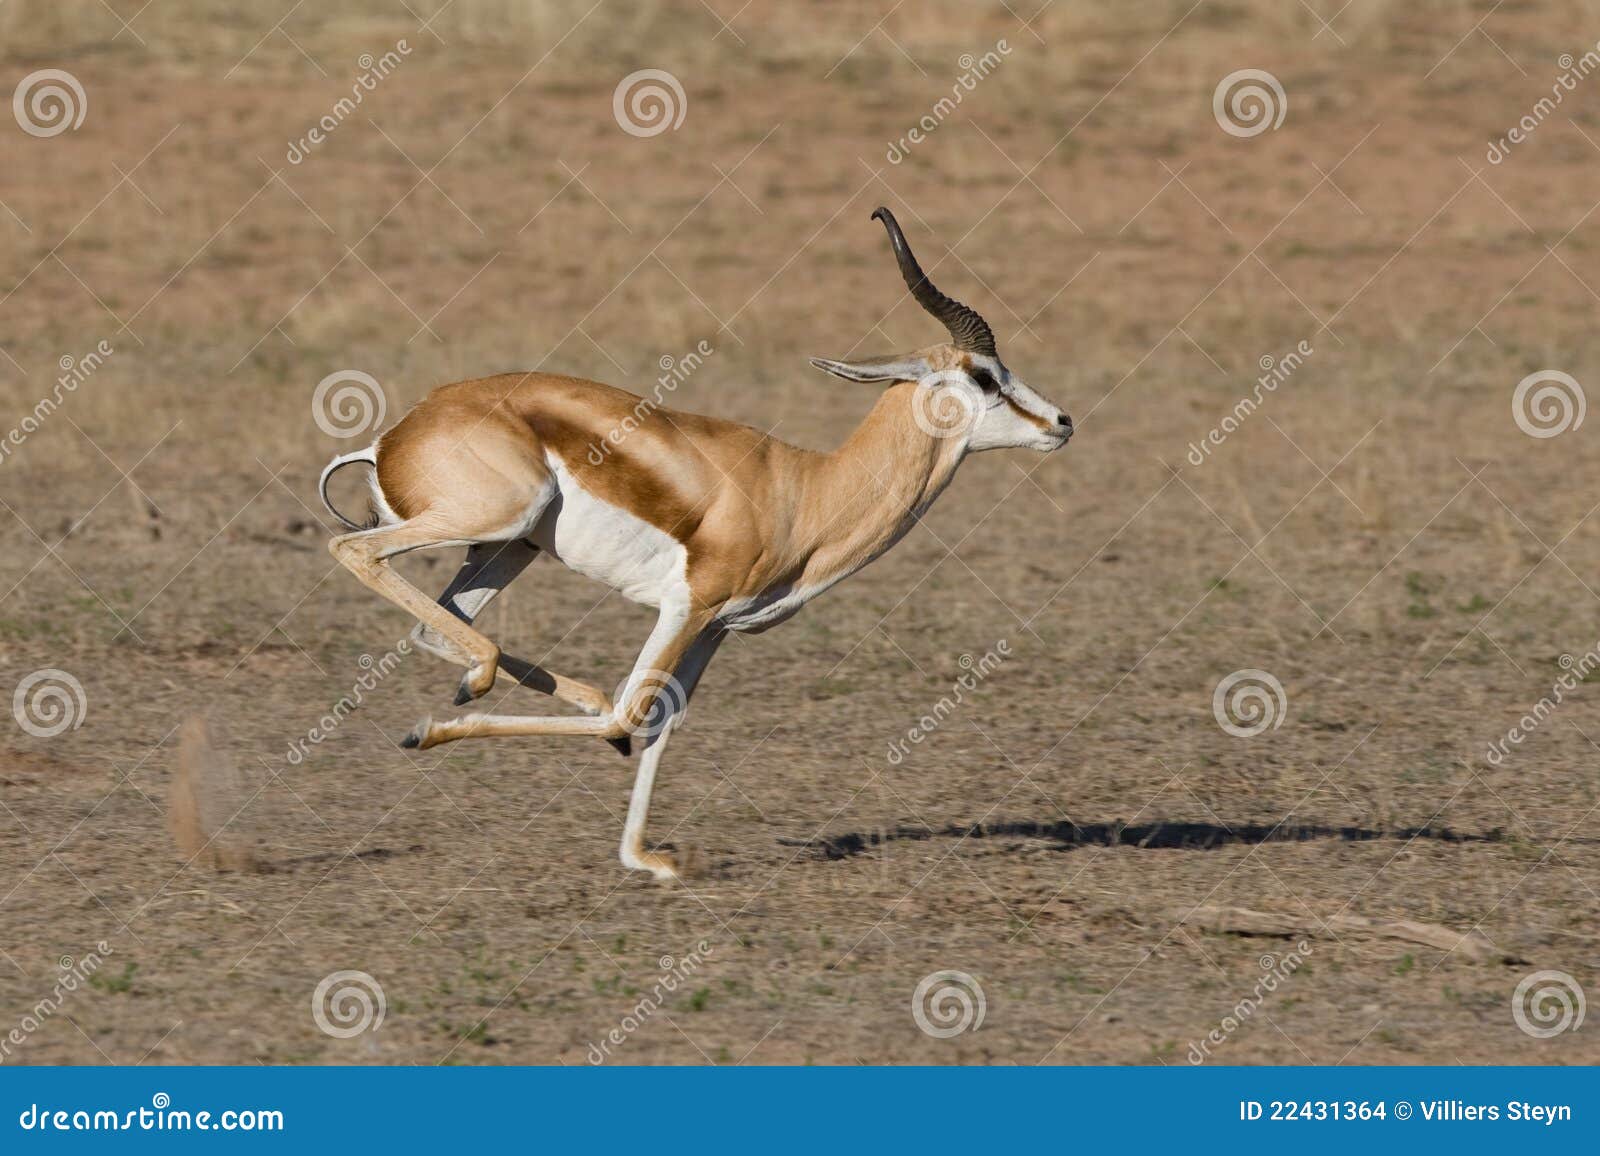 springbok running